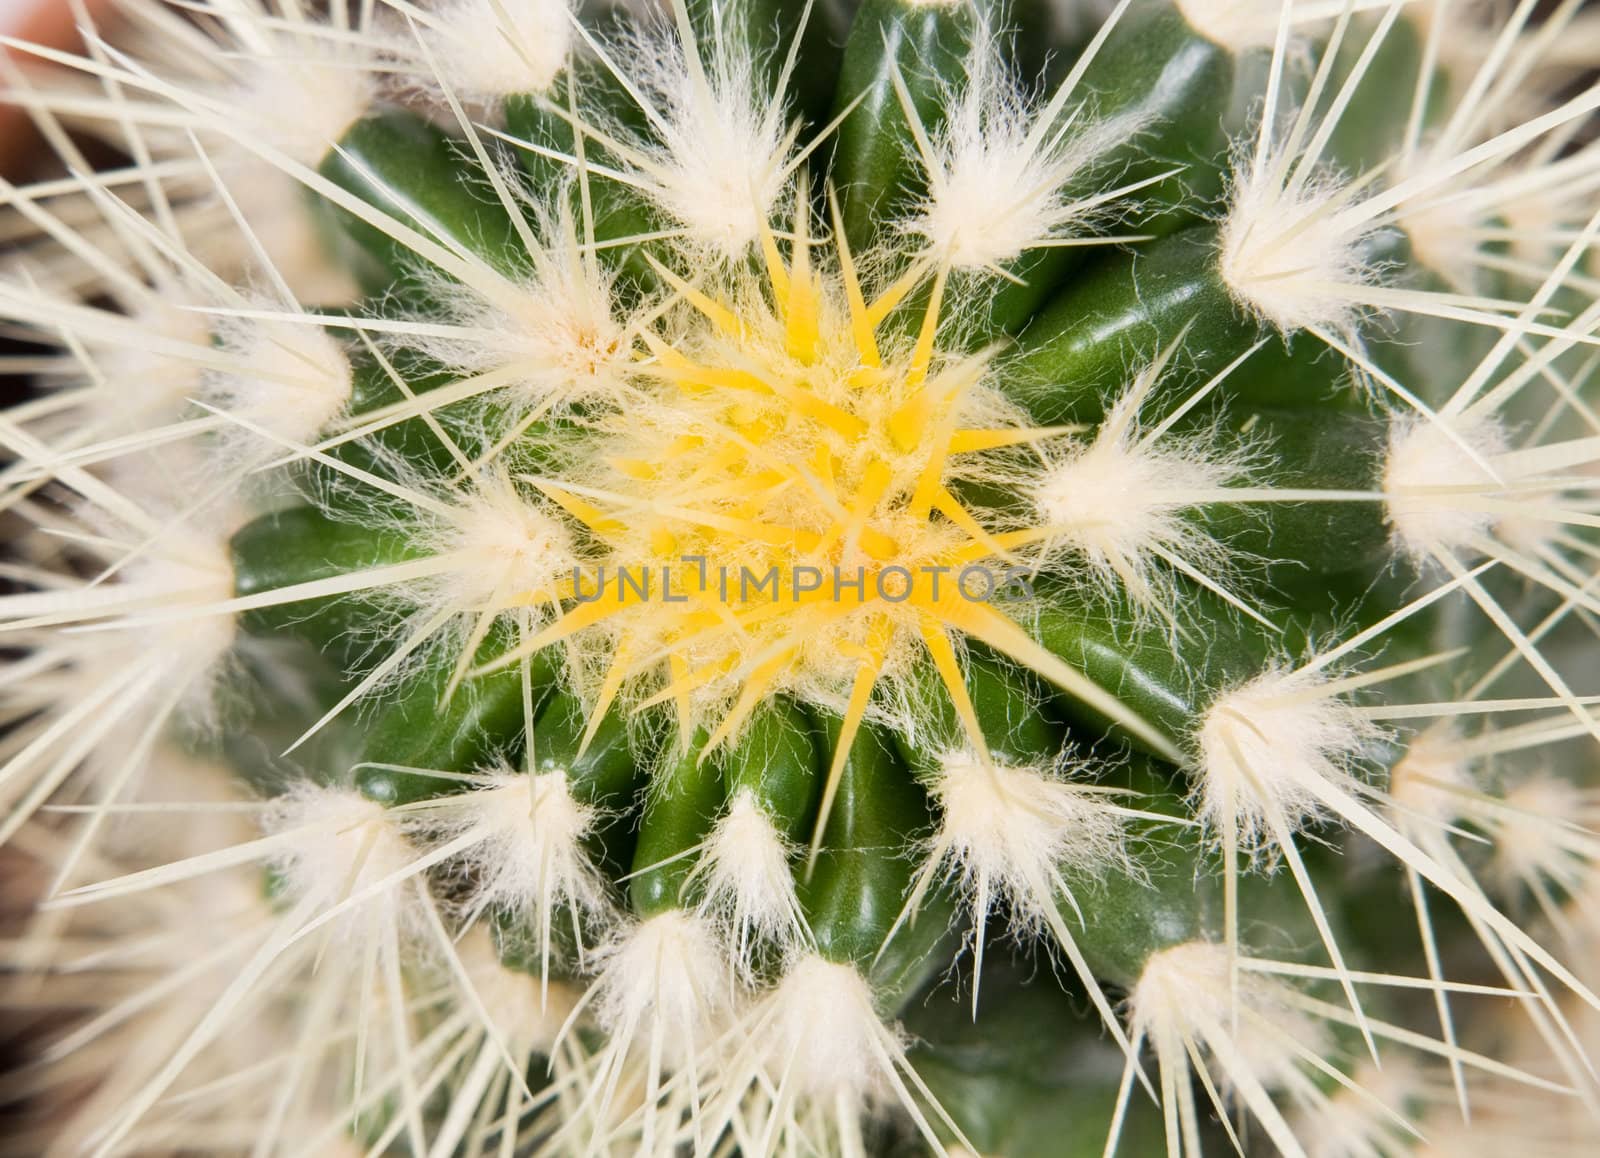 cactus isolated on white background